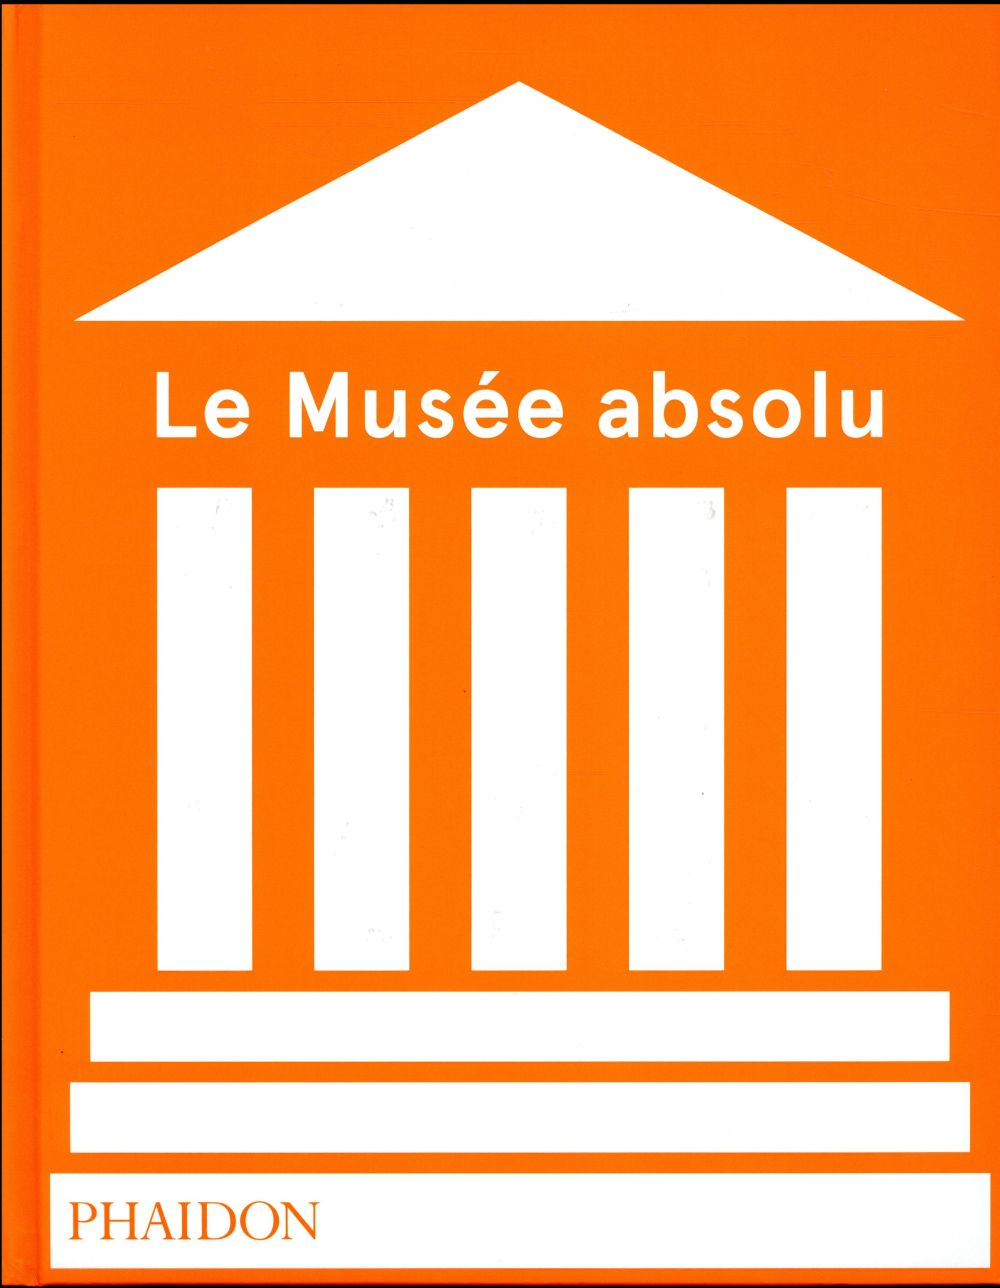 Le musée absolu